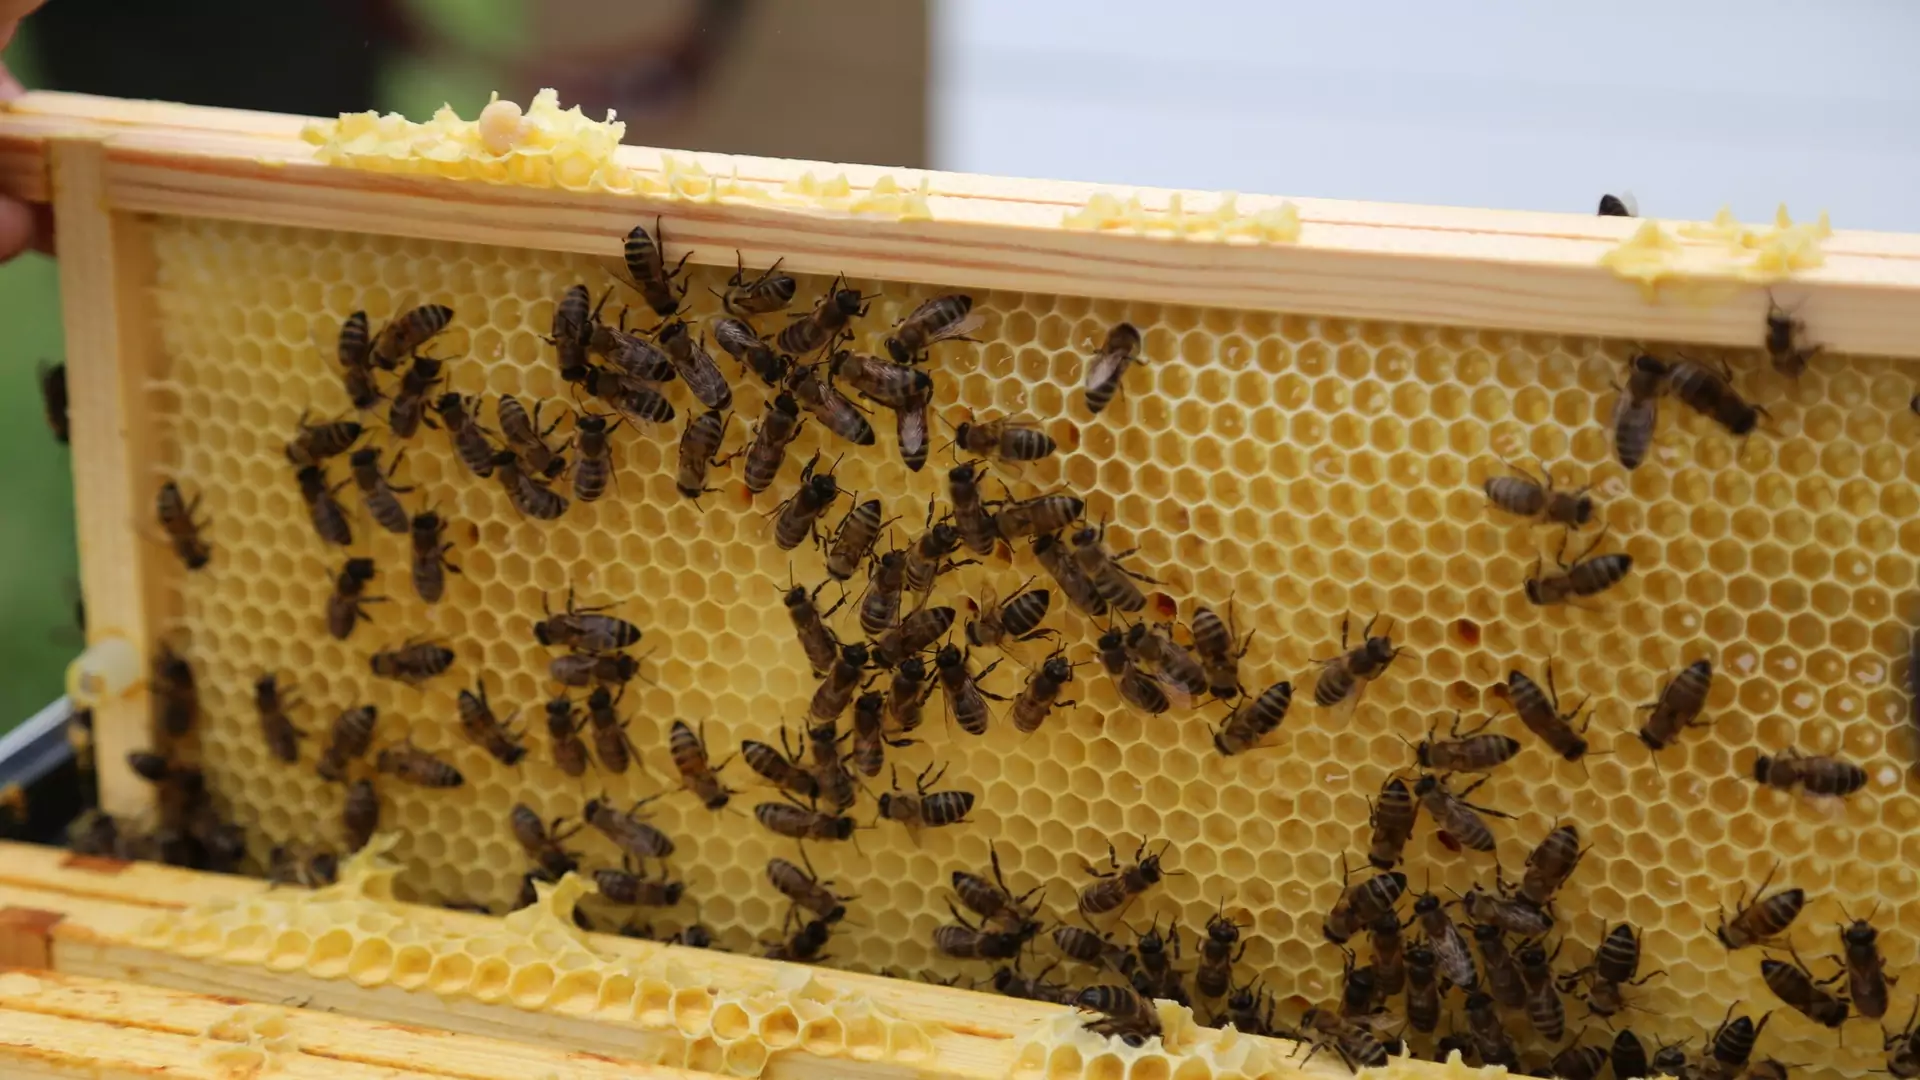 To katastrofa. 10 milionów pszczół padło przez błąd rolnika